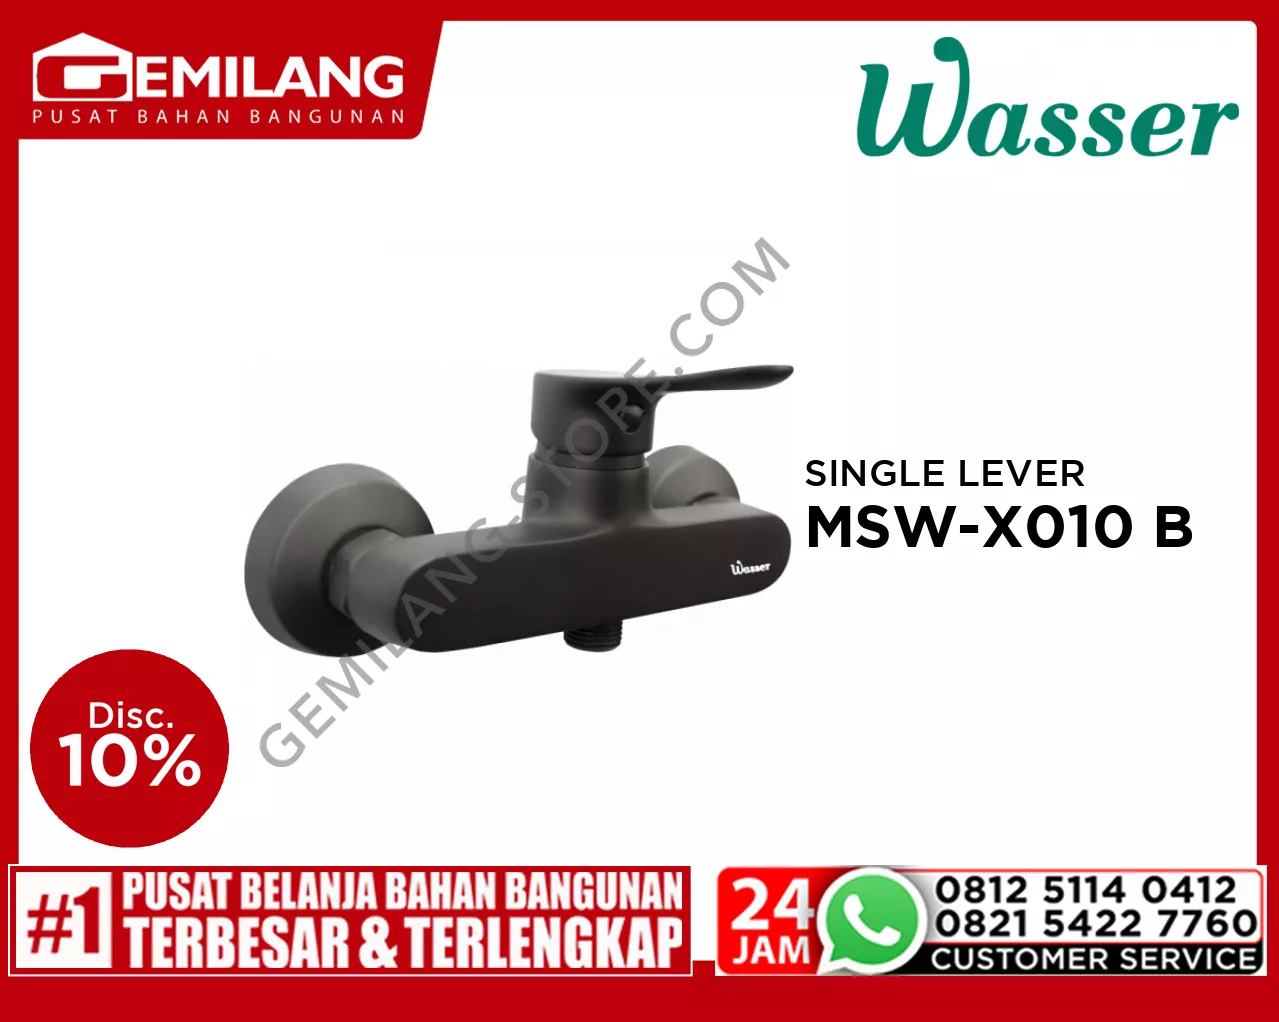 WASSER SINGLE LEVER SHOWER MIXER MSW-X010 BLACK